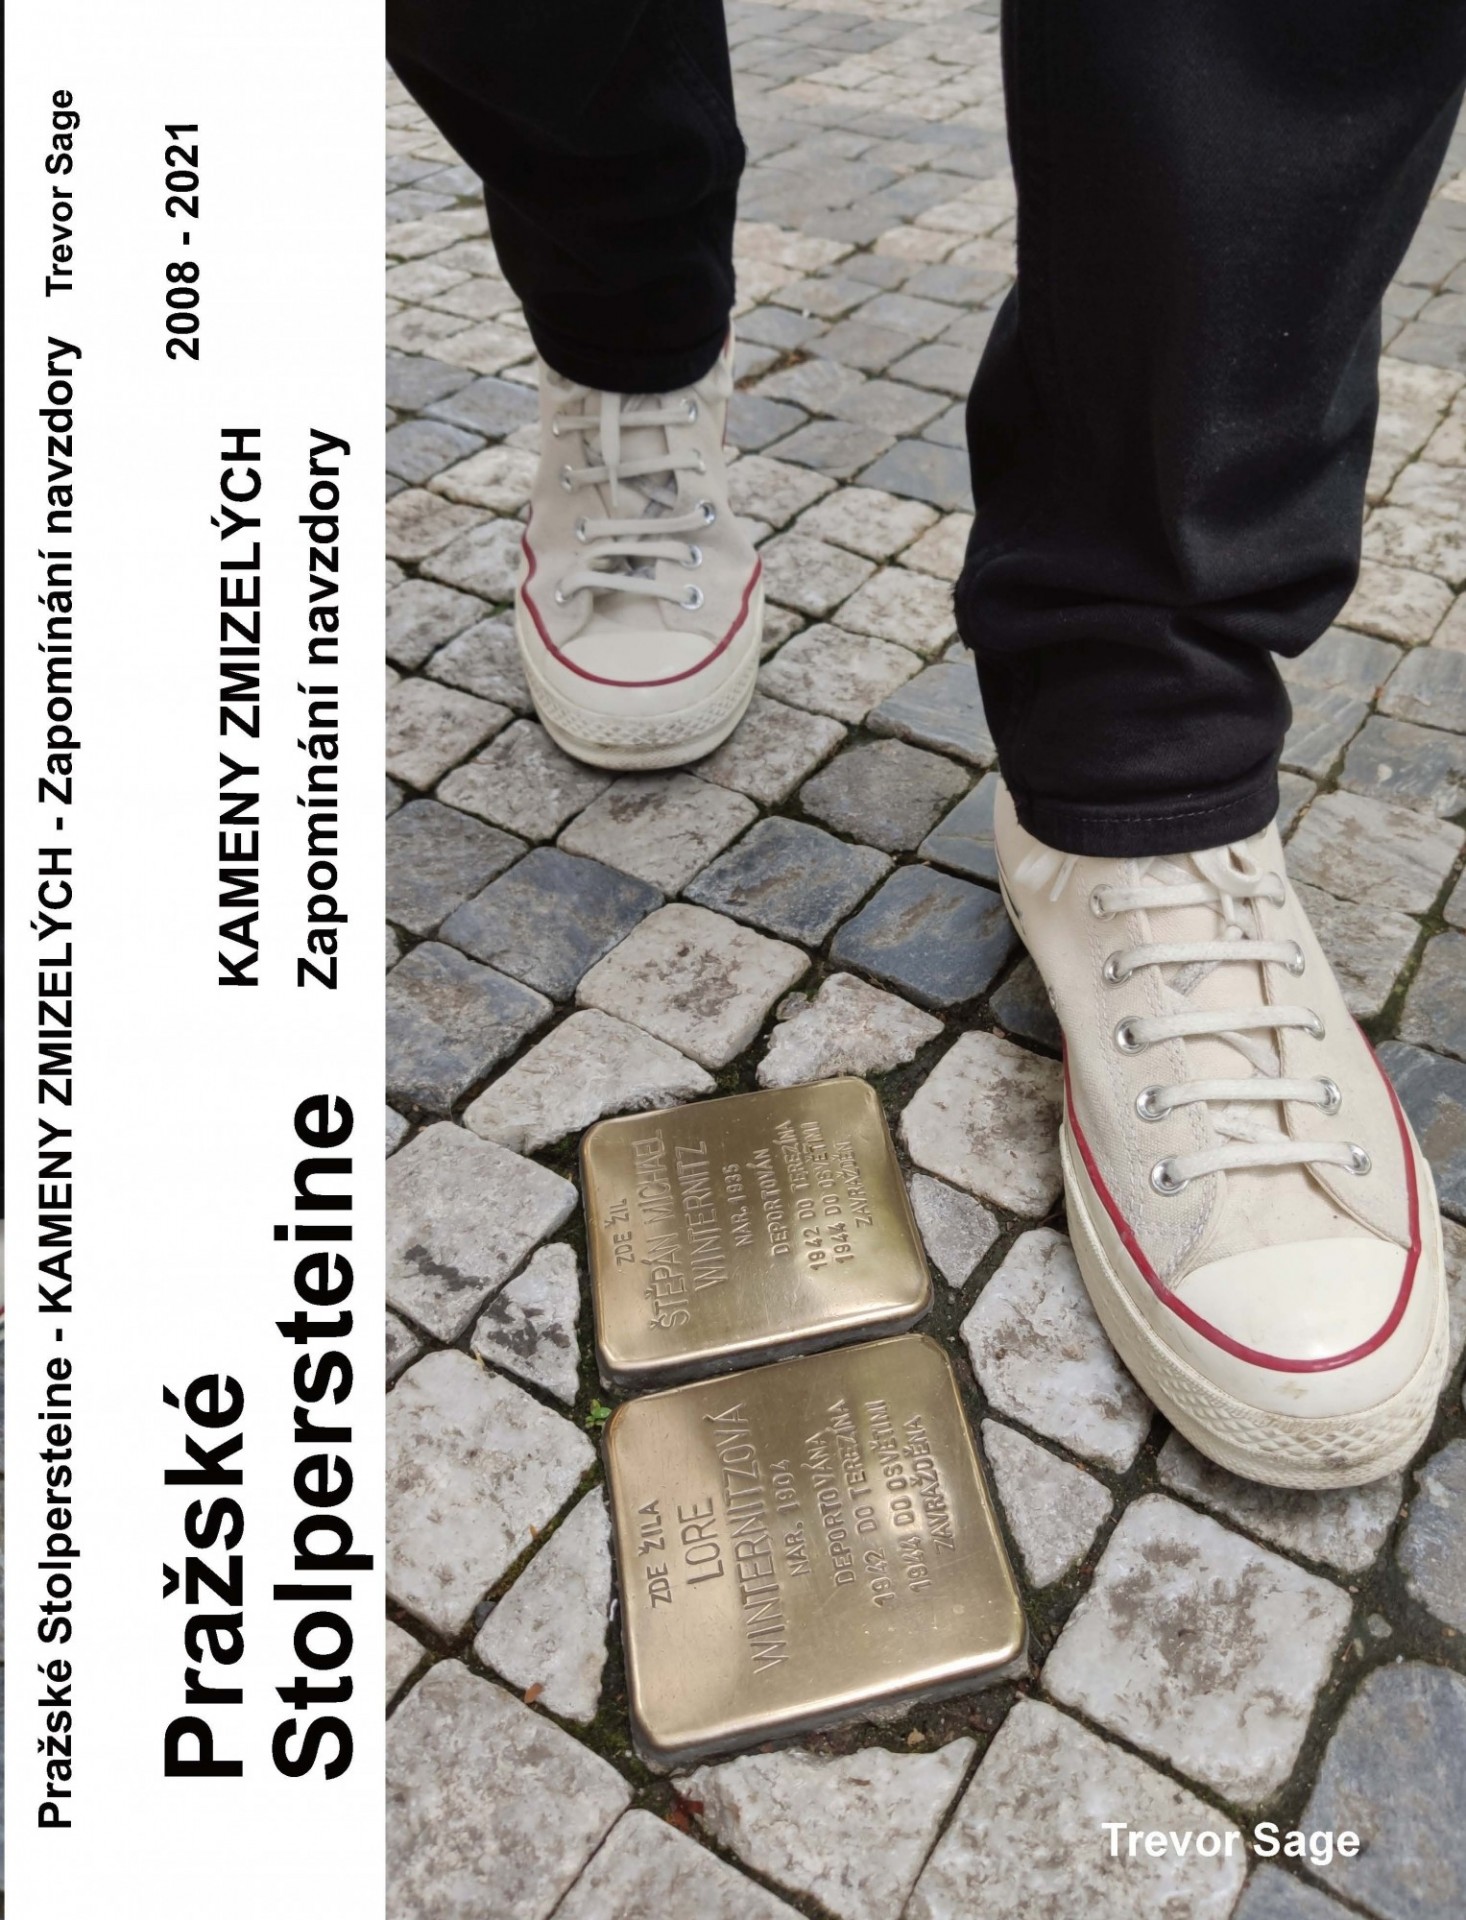 Prague's "Stolpersteine - Stumbling Stones: Defiant in Their Memory, 2008 - 2021"